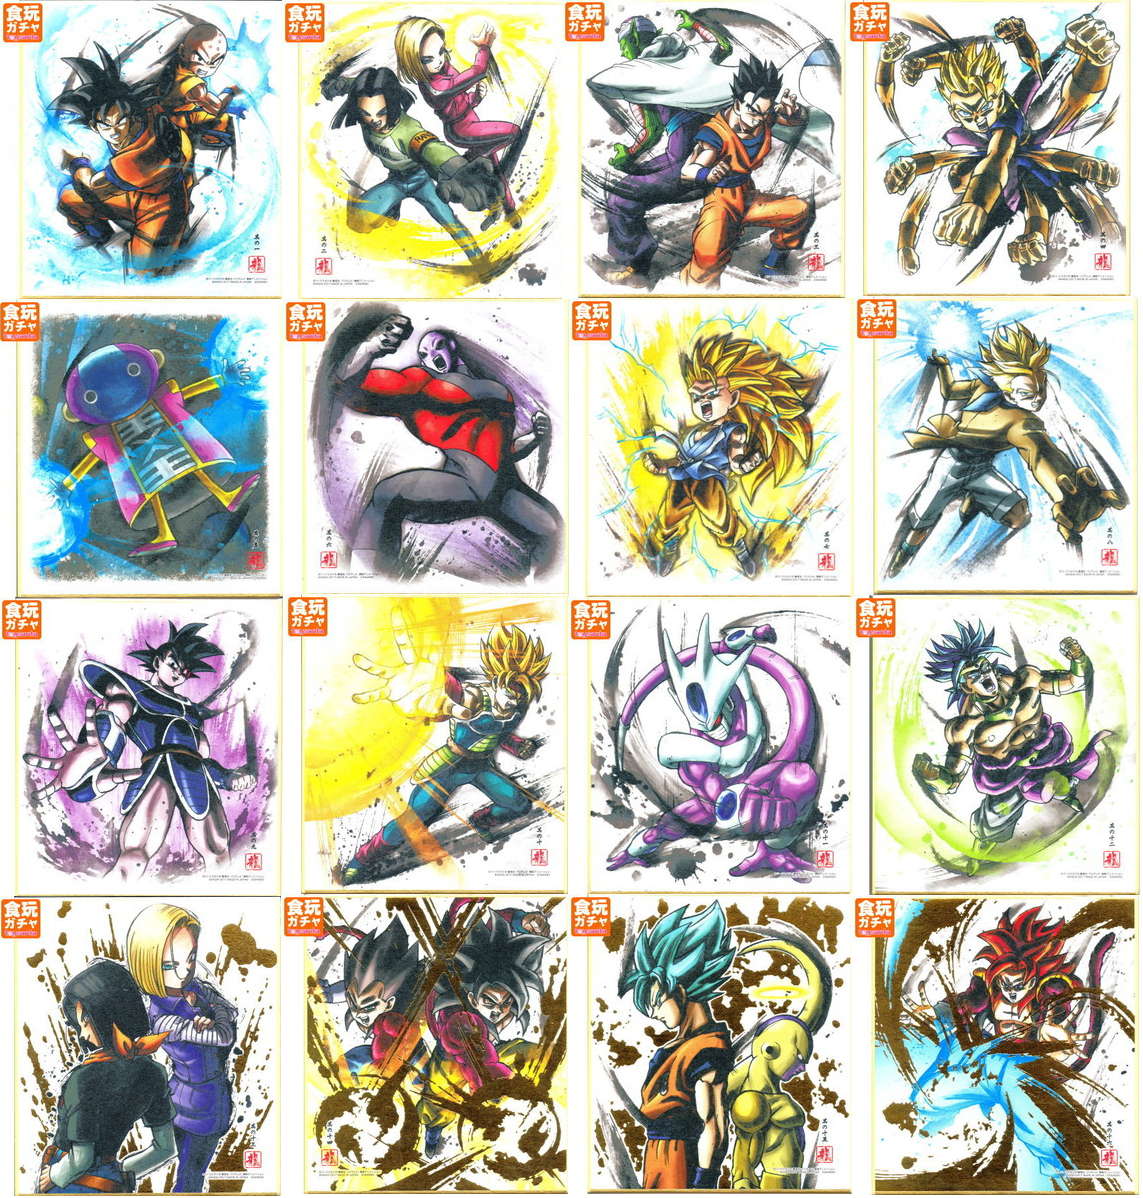 ドラゴンボール 色紙art4 全16種 色紙画像 遊戯王 ドラゴンボール通販予約情報局